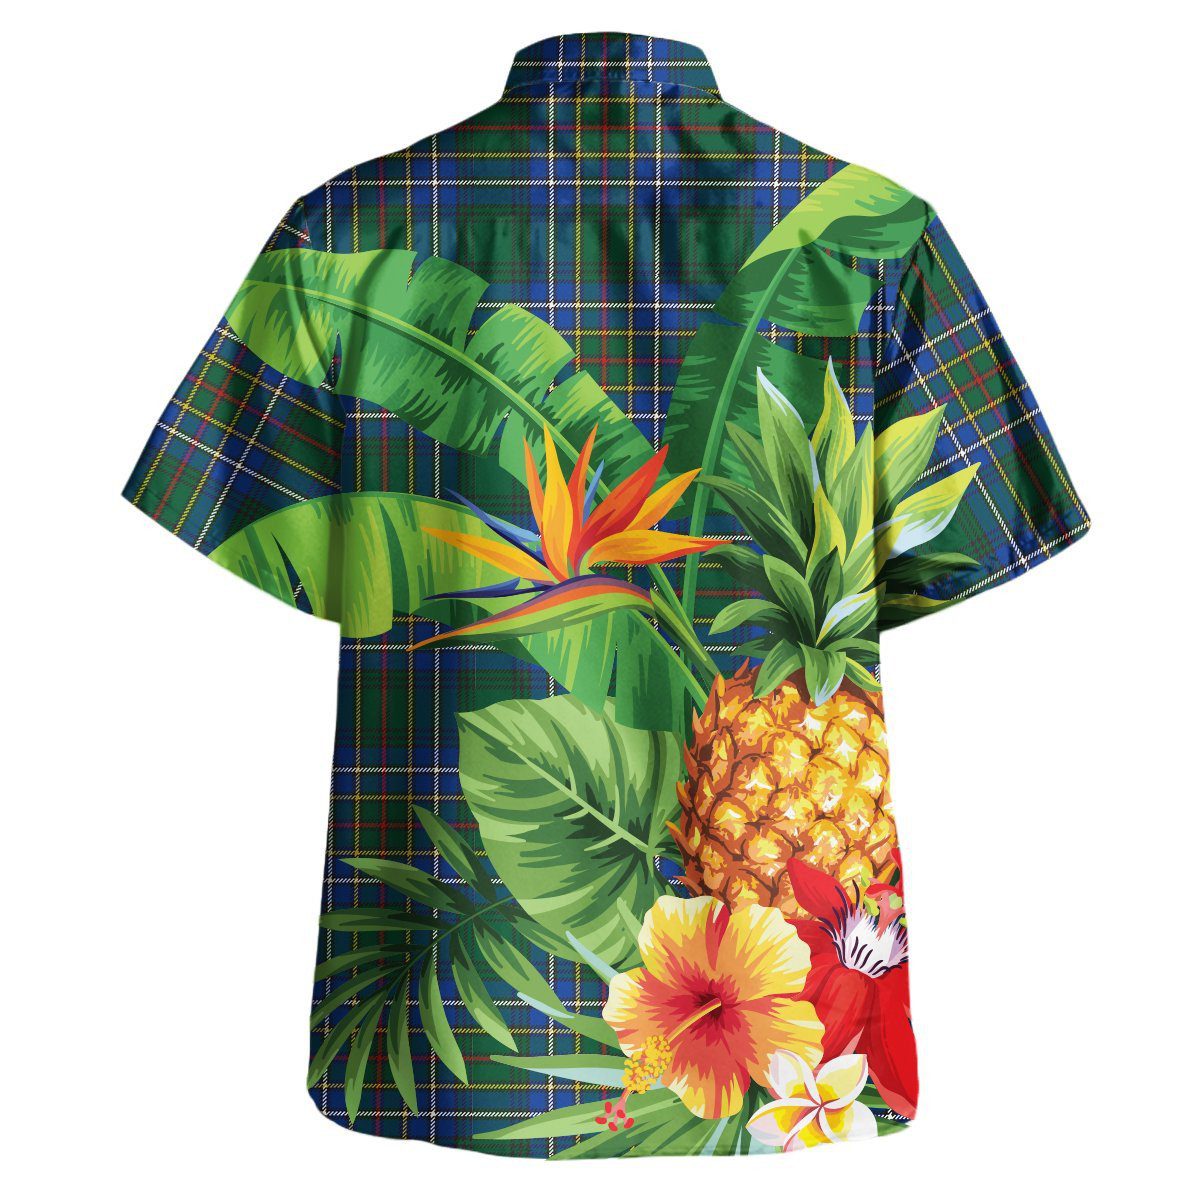 Cockburn Ancient Tartan Aloha Shirt version 2